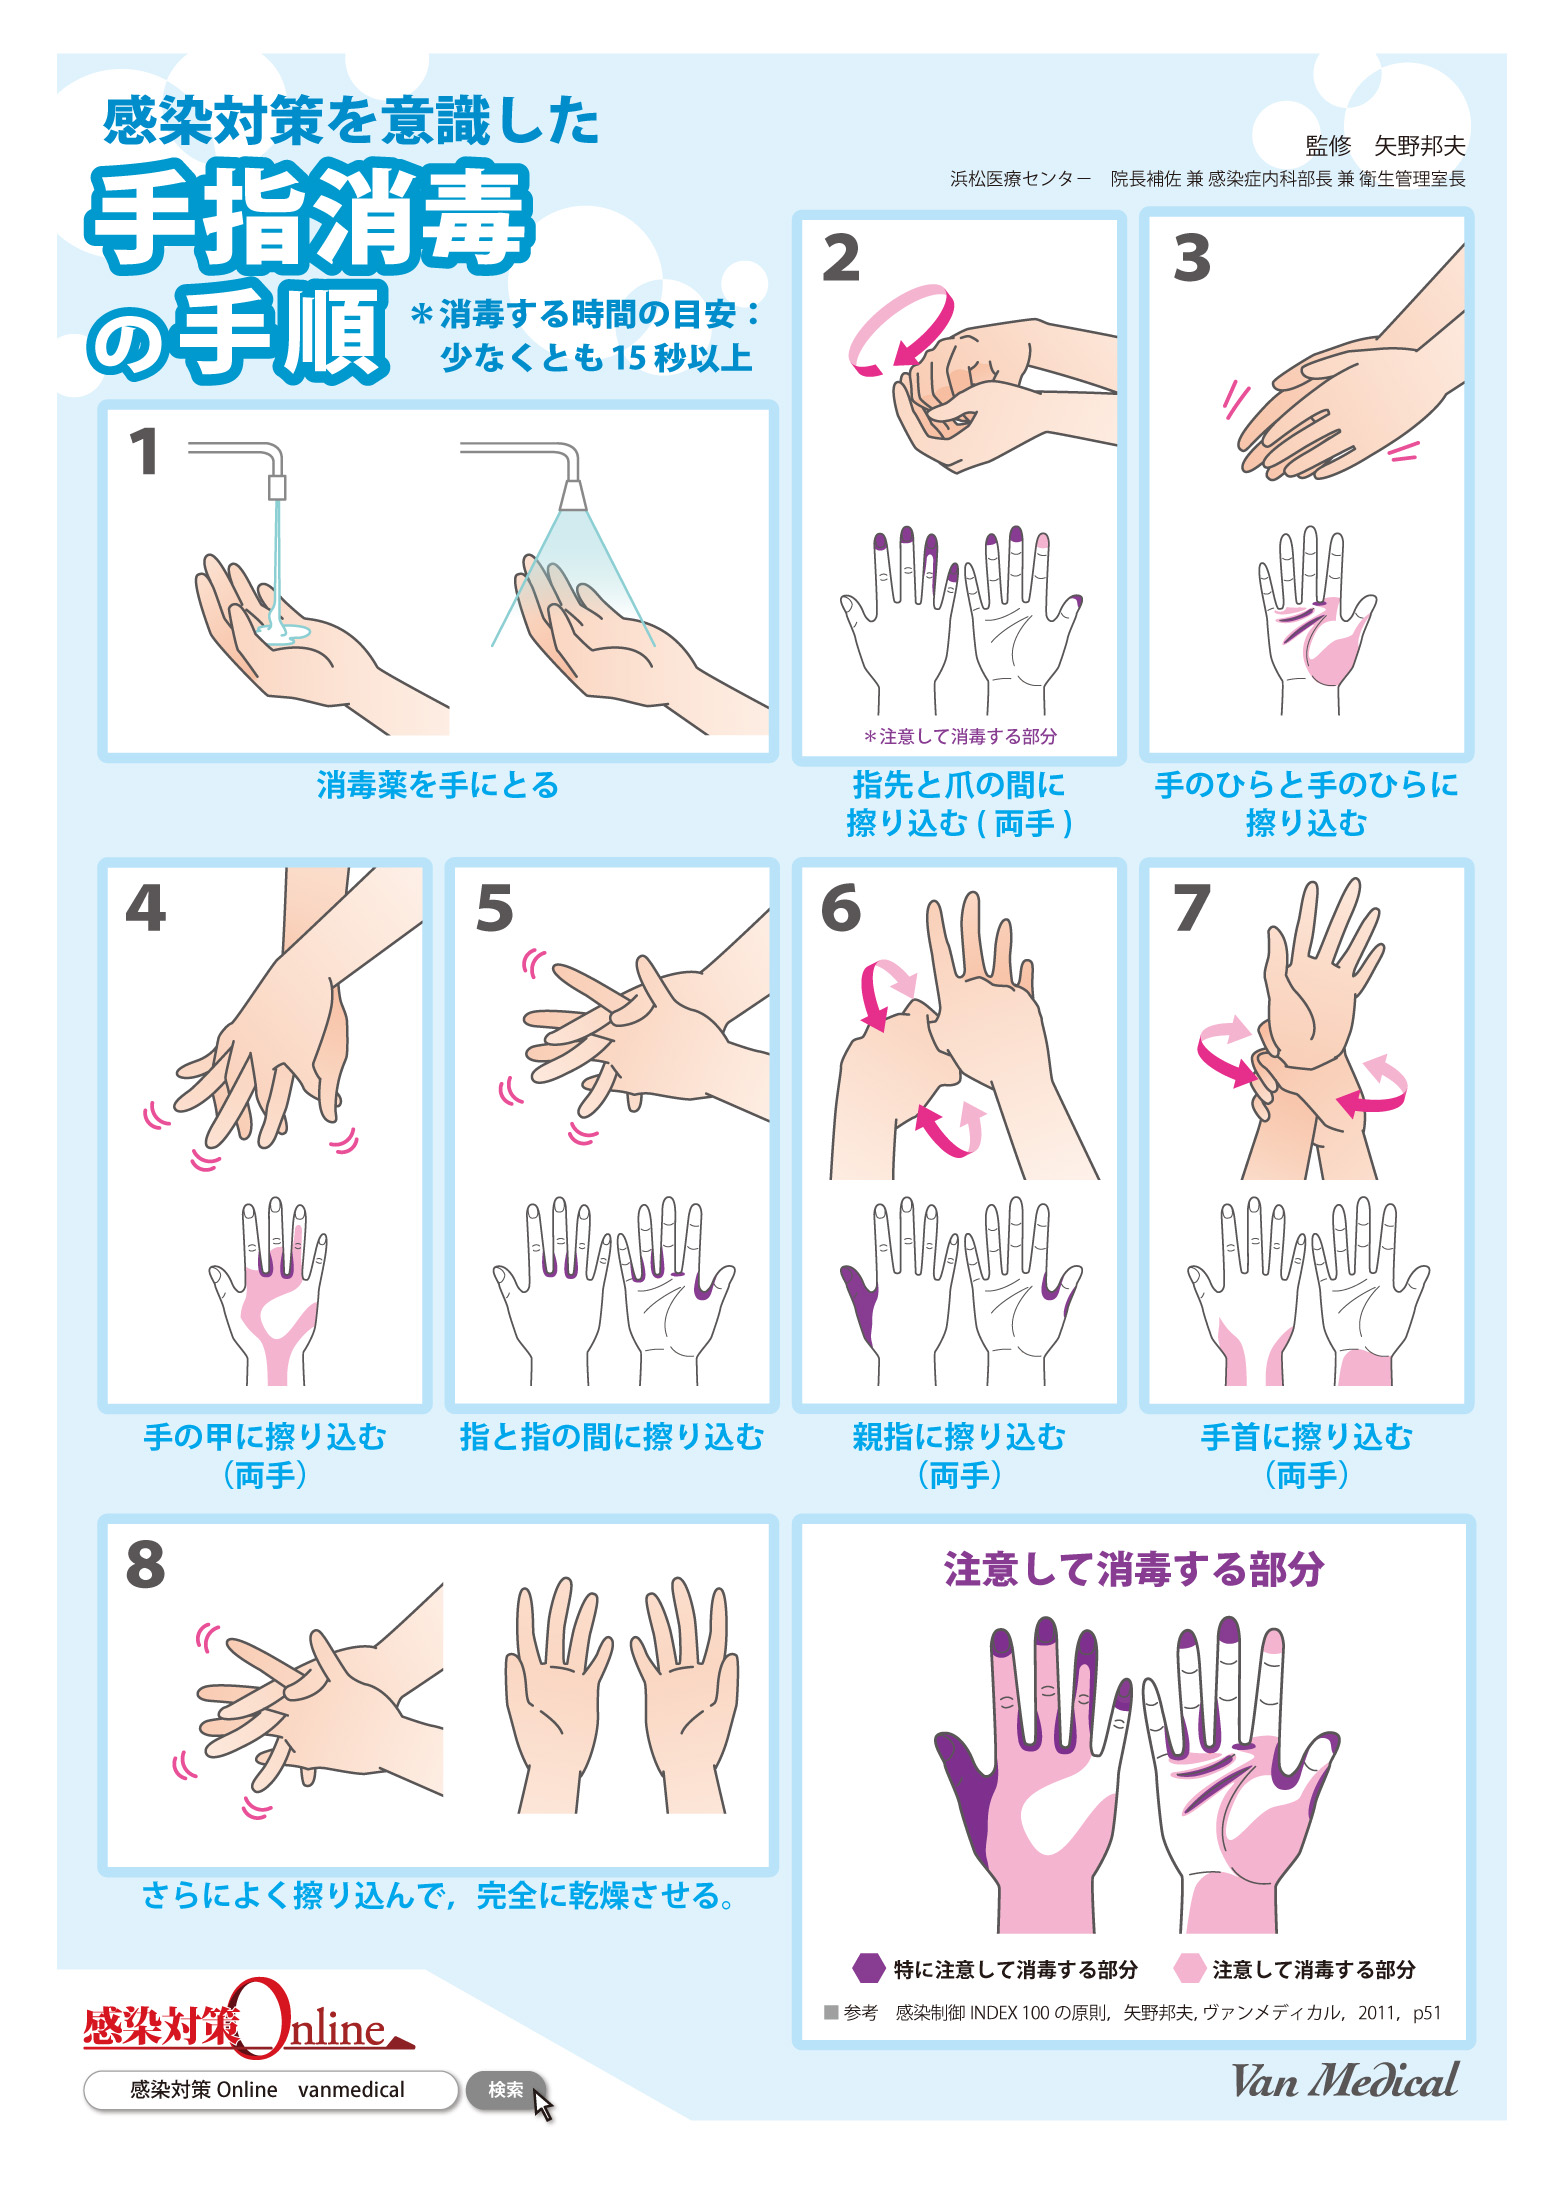 お役立ちツール第2弾 感染対策を意識した手指消毒の手順 感染対策online